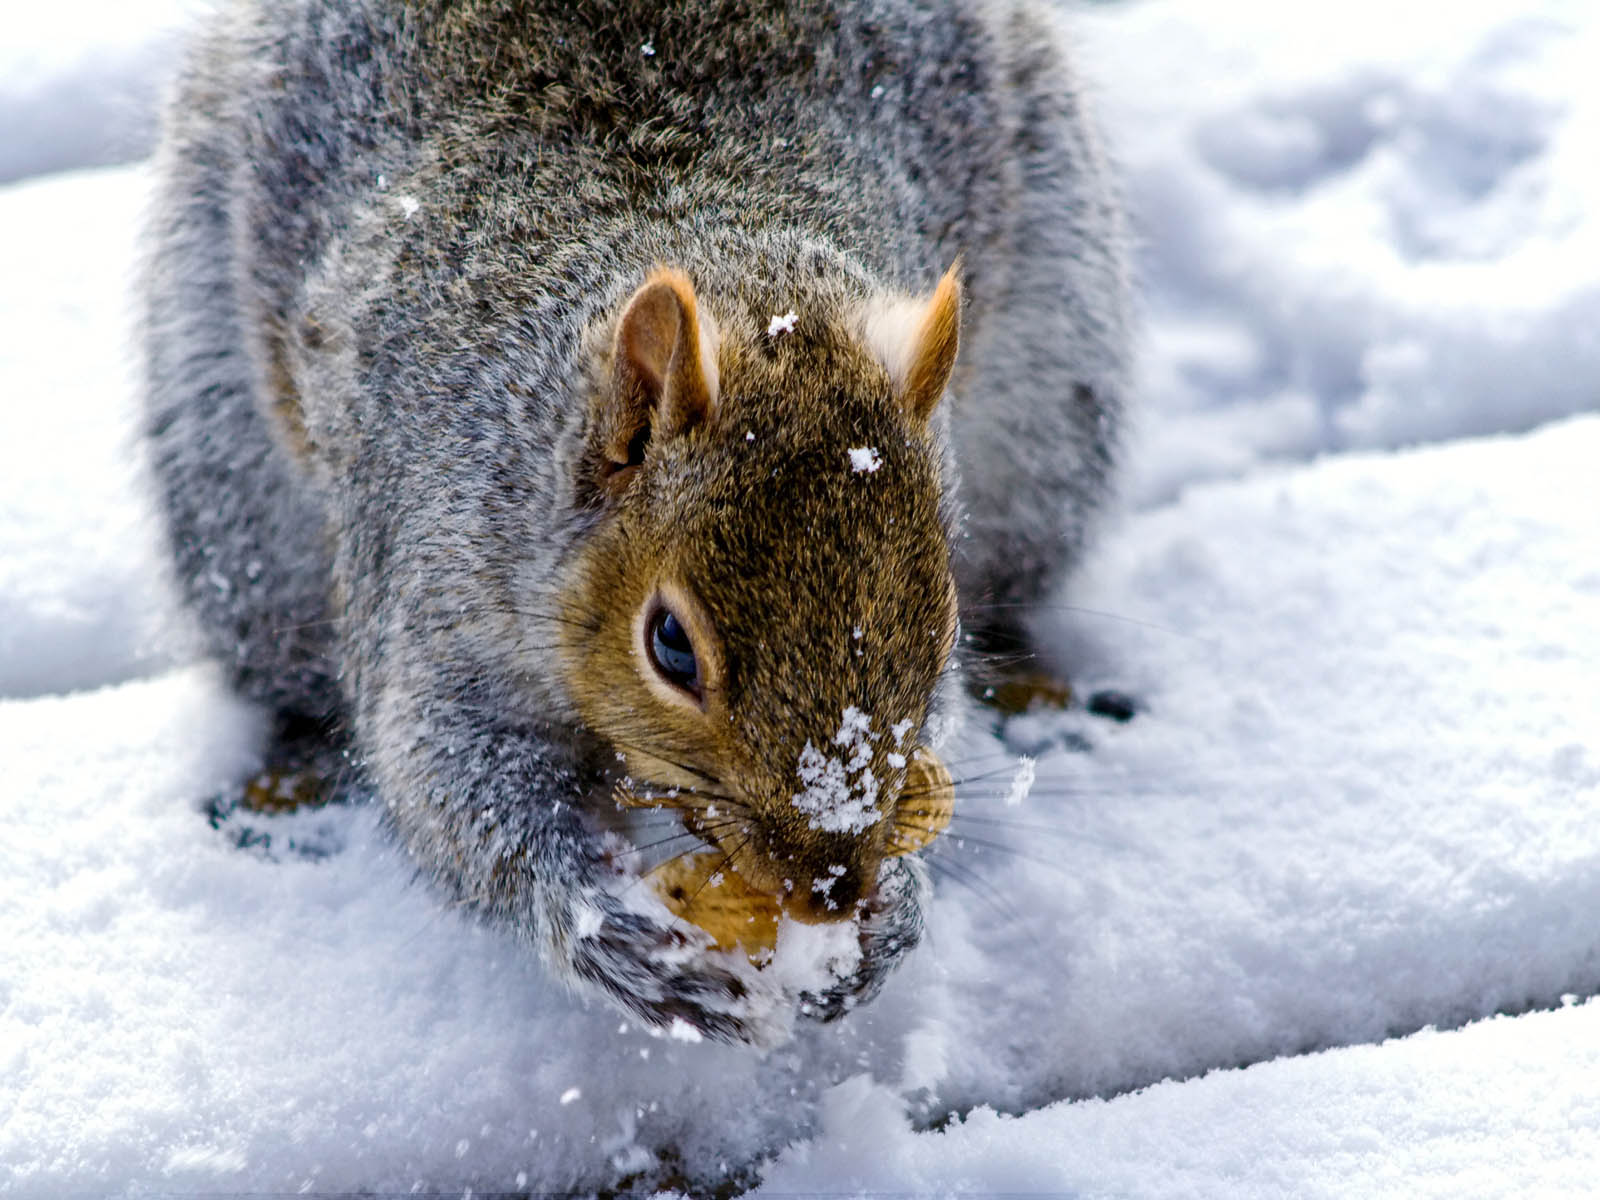 Immagini Scoiattoli Roditori Animali scoiattolo rodentia animale